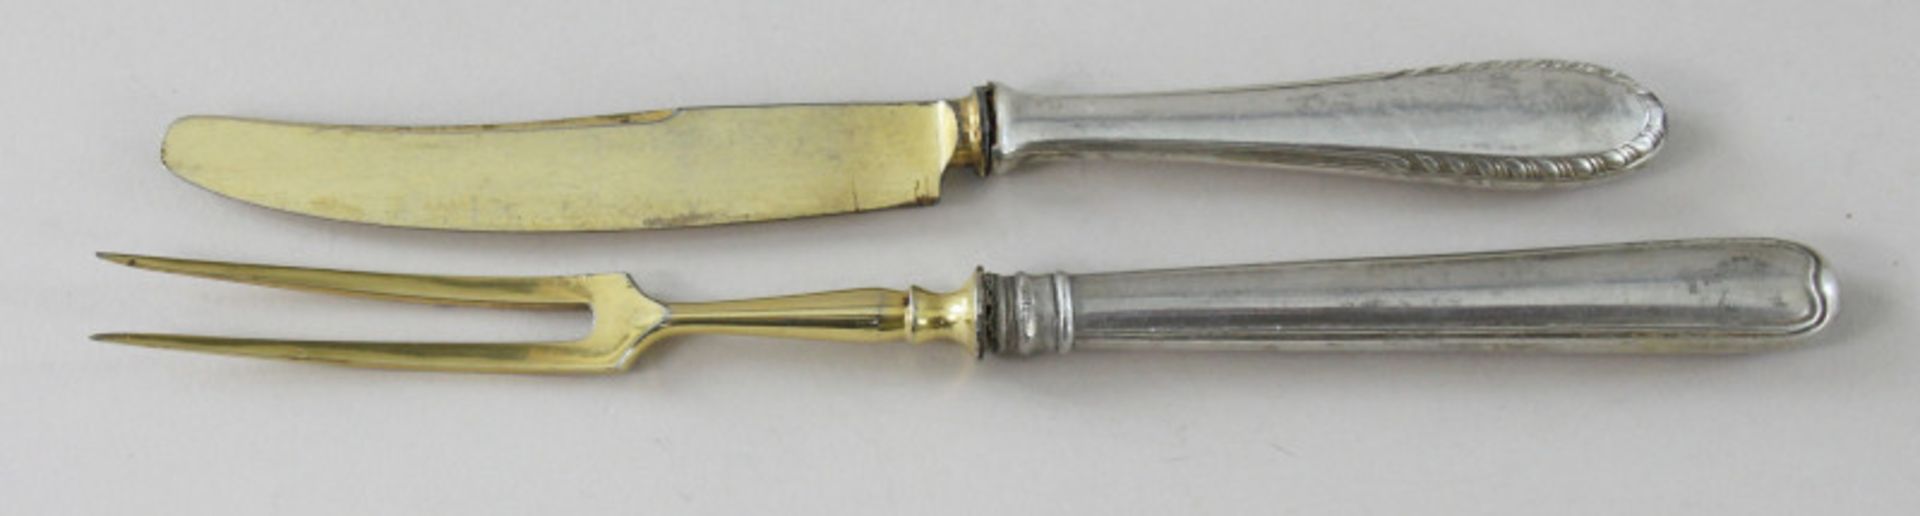 2 verschiedene Besteckteile aus 800er Silber u. a. der Silbermanufaktur Wilhelm Binder, Schwäbisch